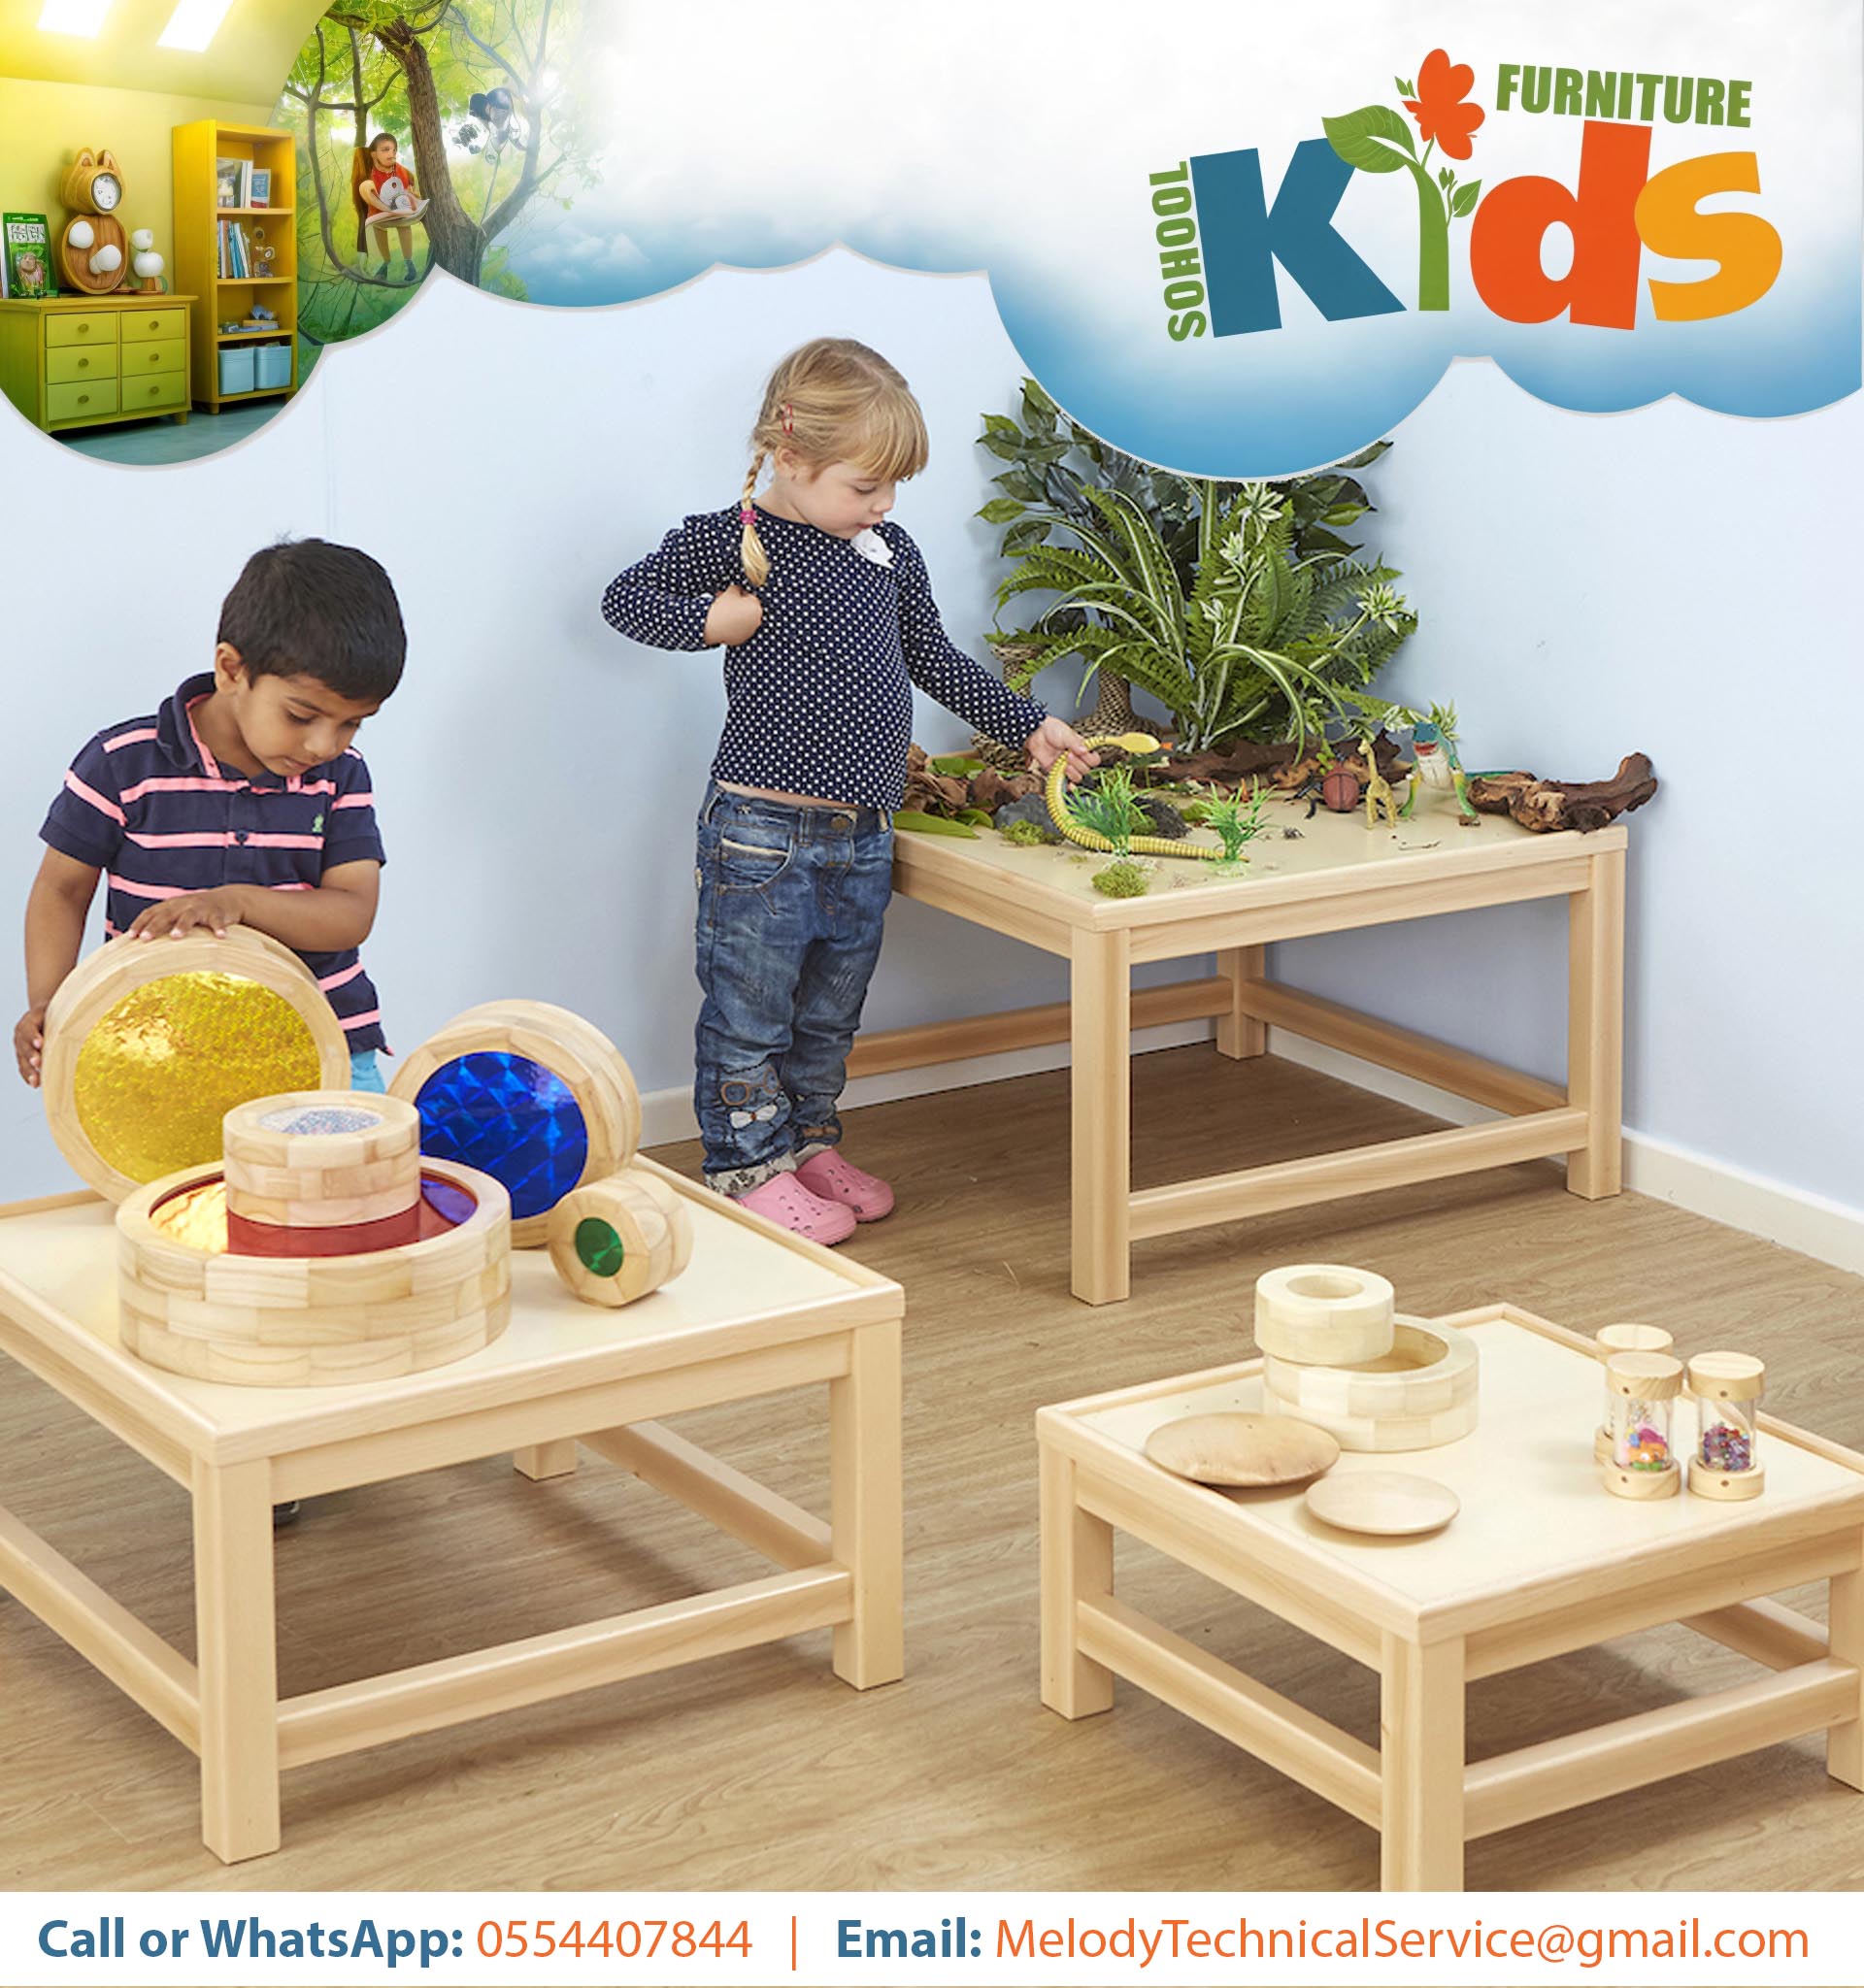 Kids Furniture in Dubai | Kids School Furniture in UAE